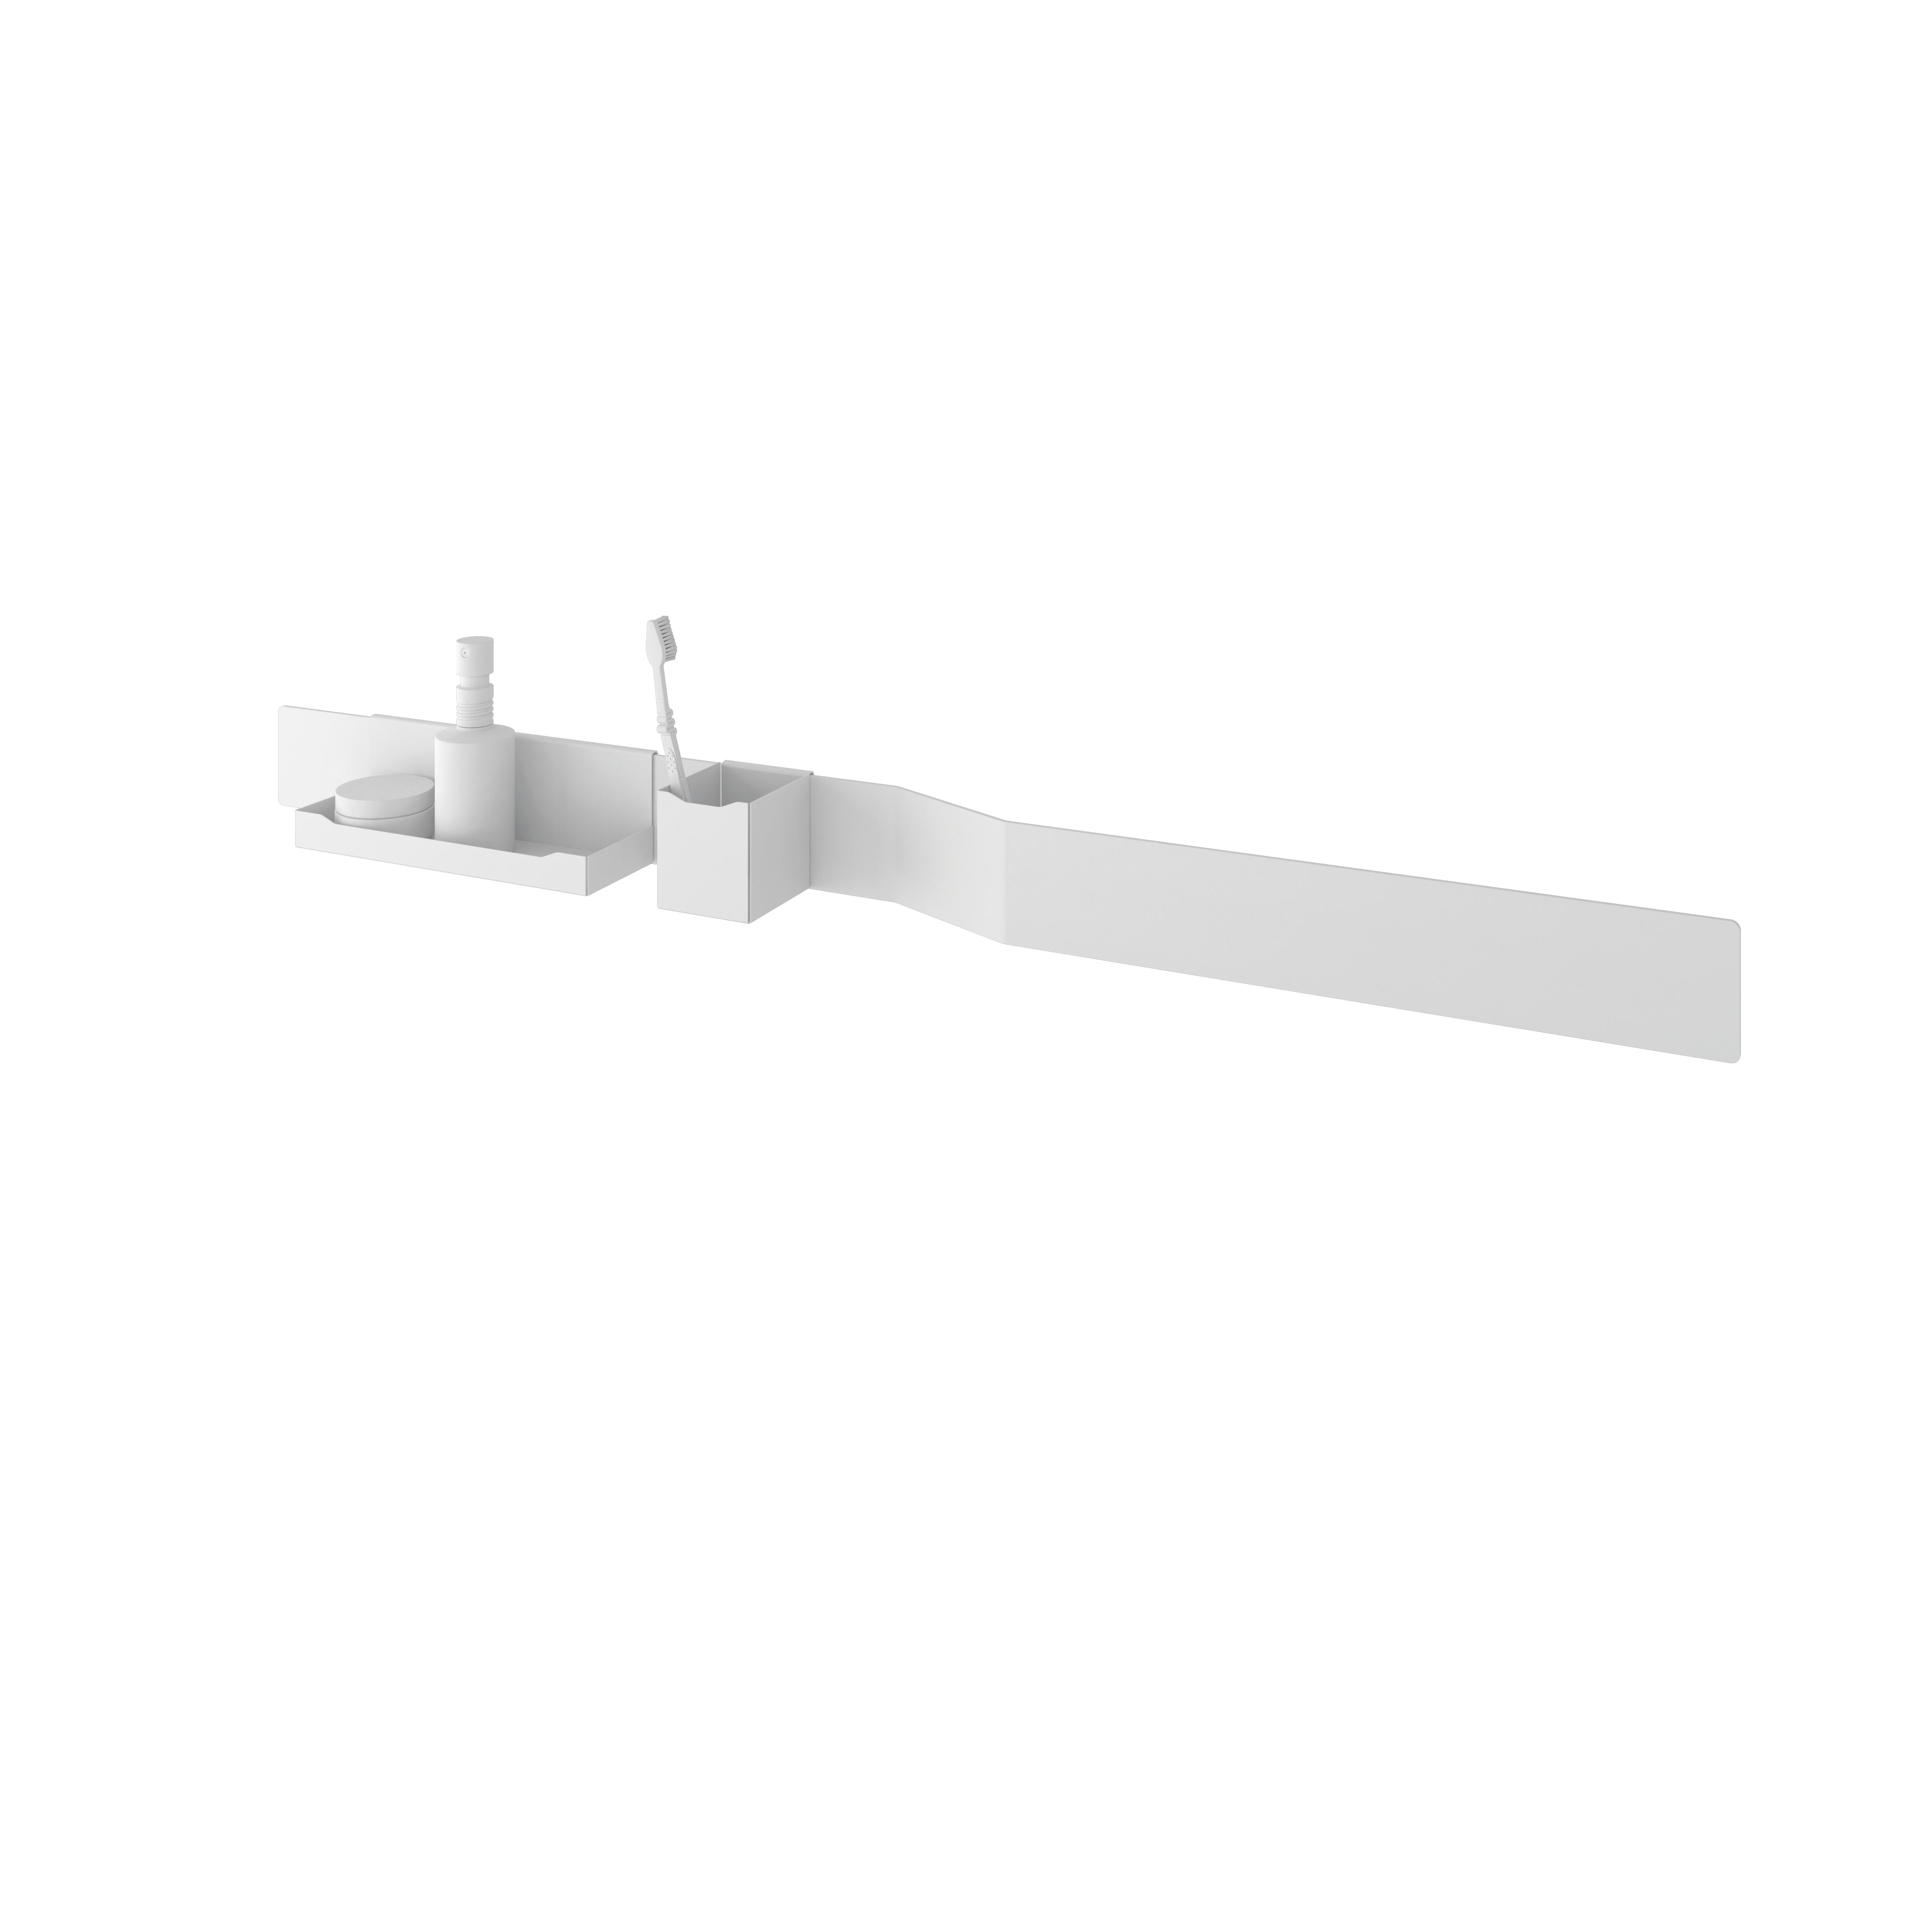 Set accesorios baño tokio-osaka blanco con textura